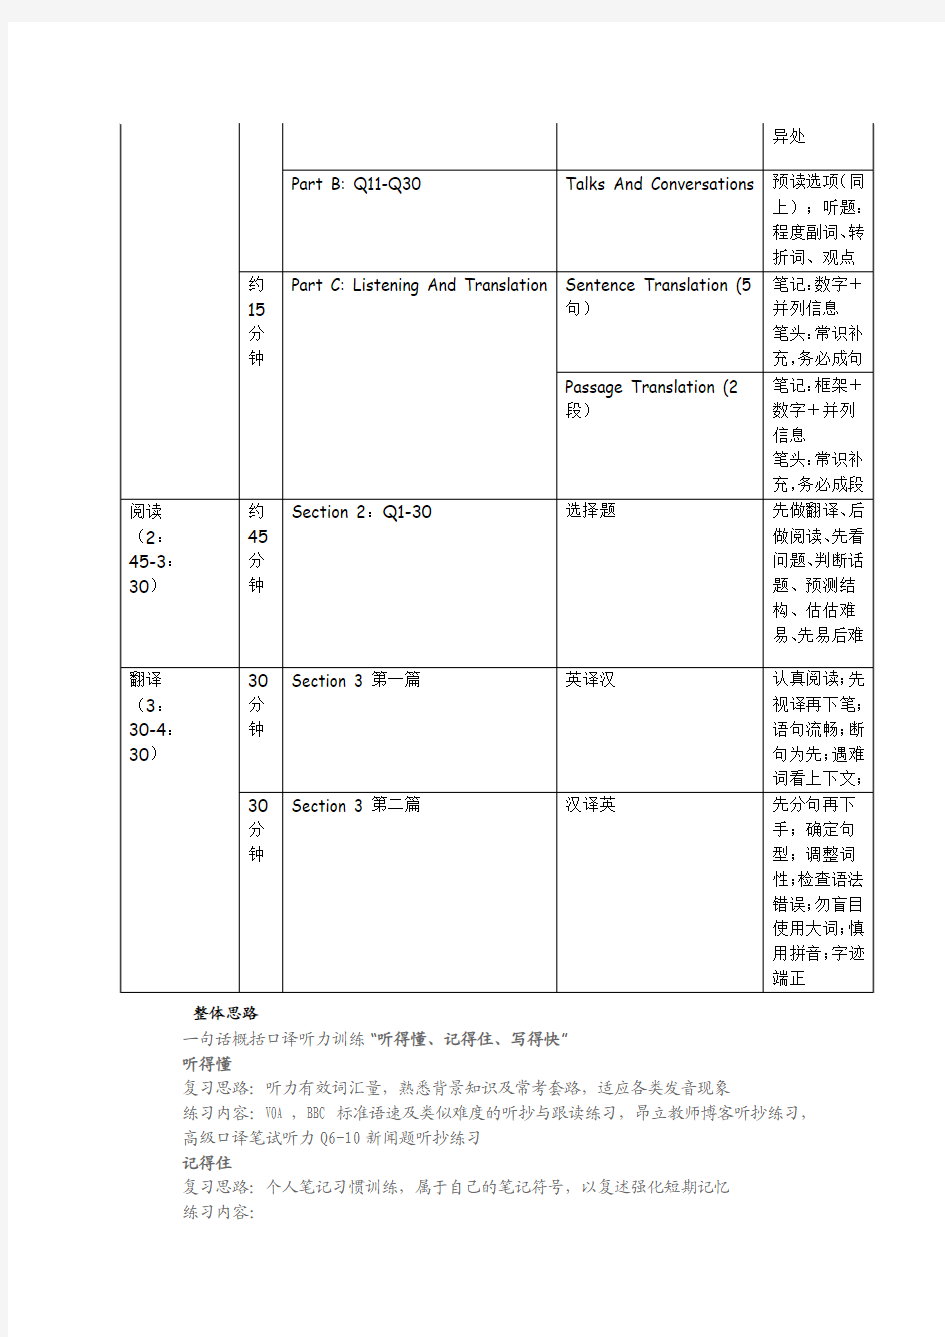 上海中级口译考试流程